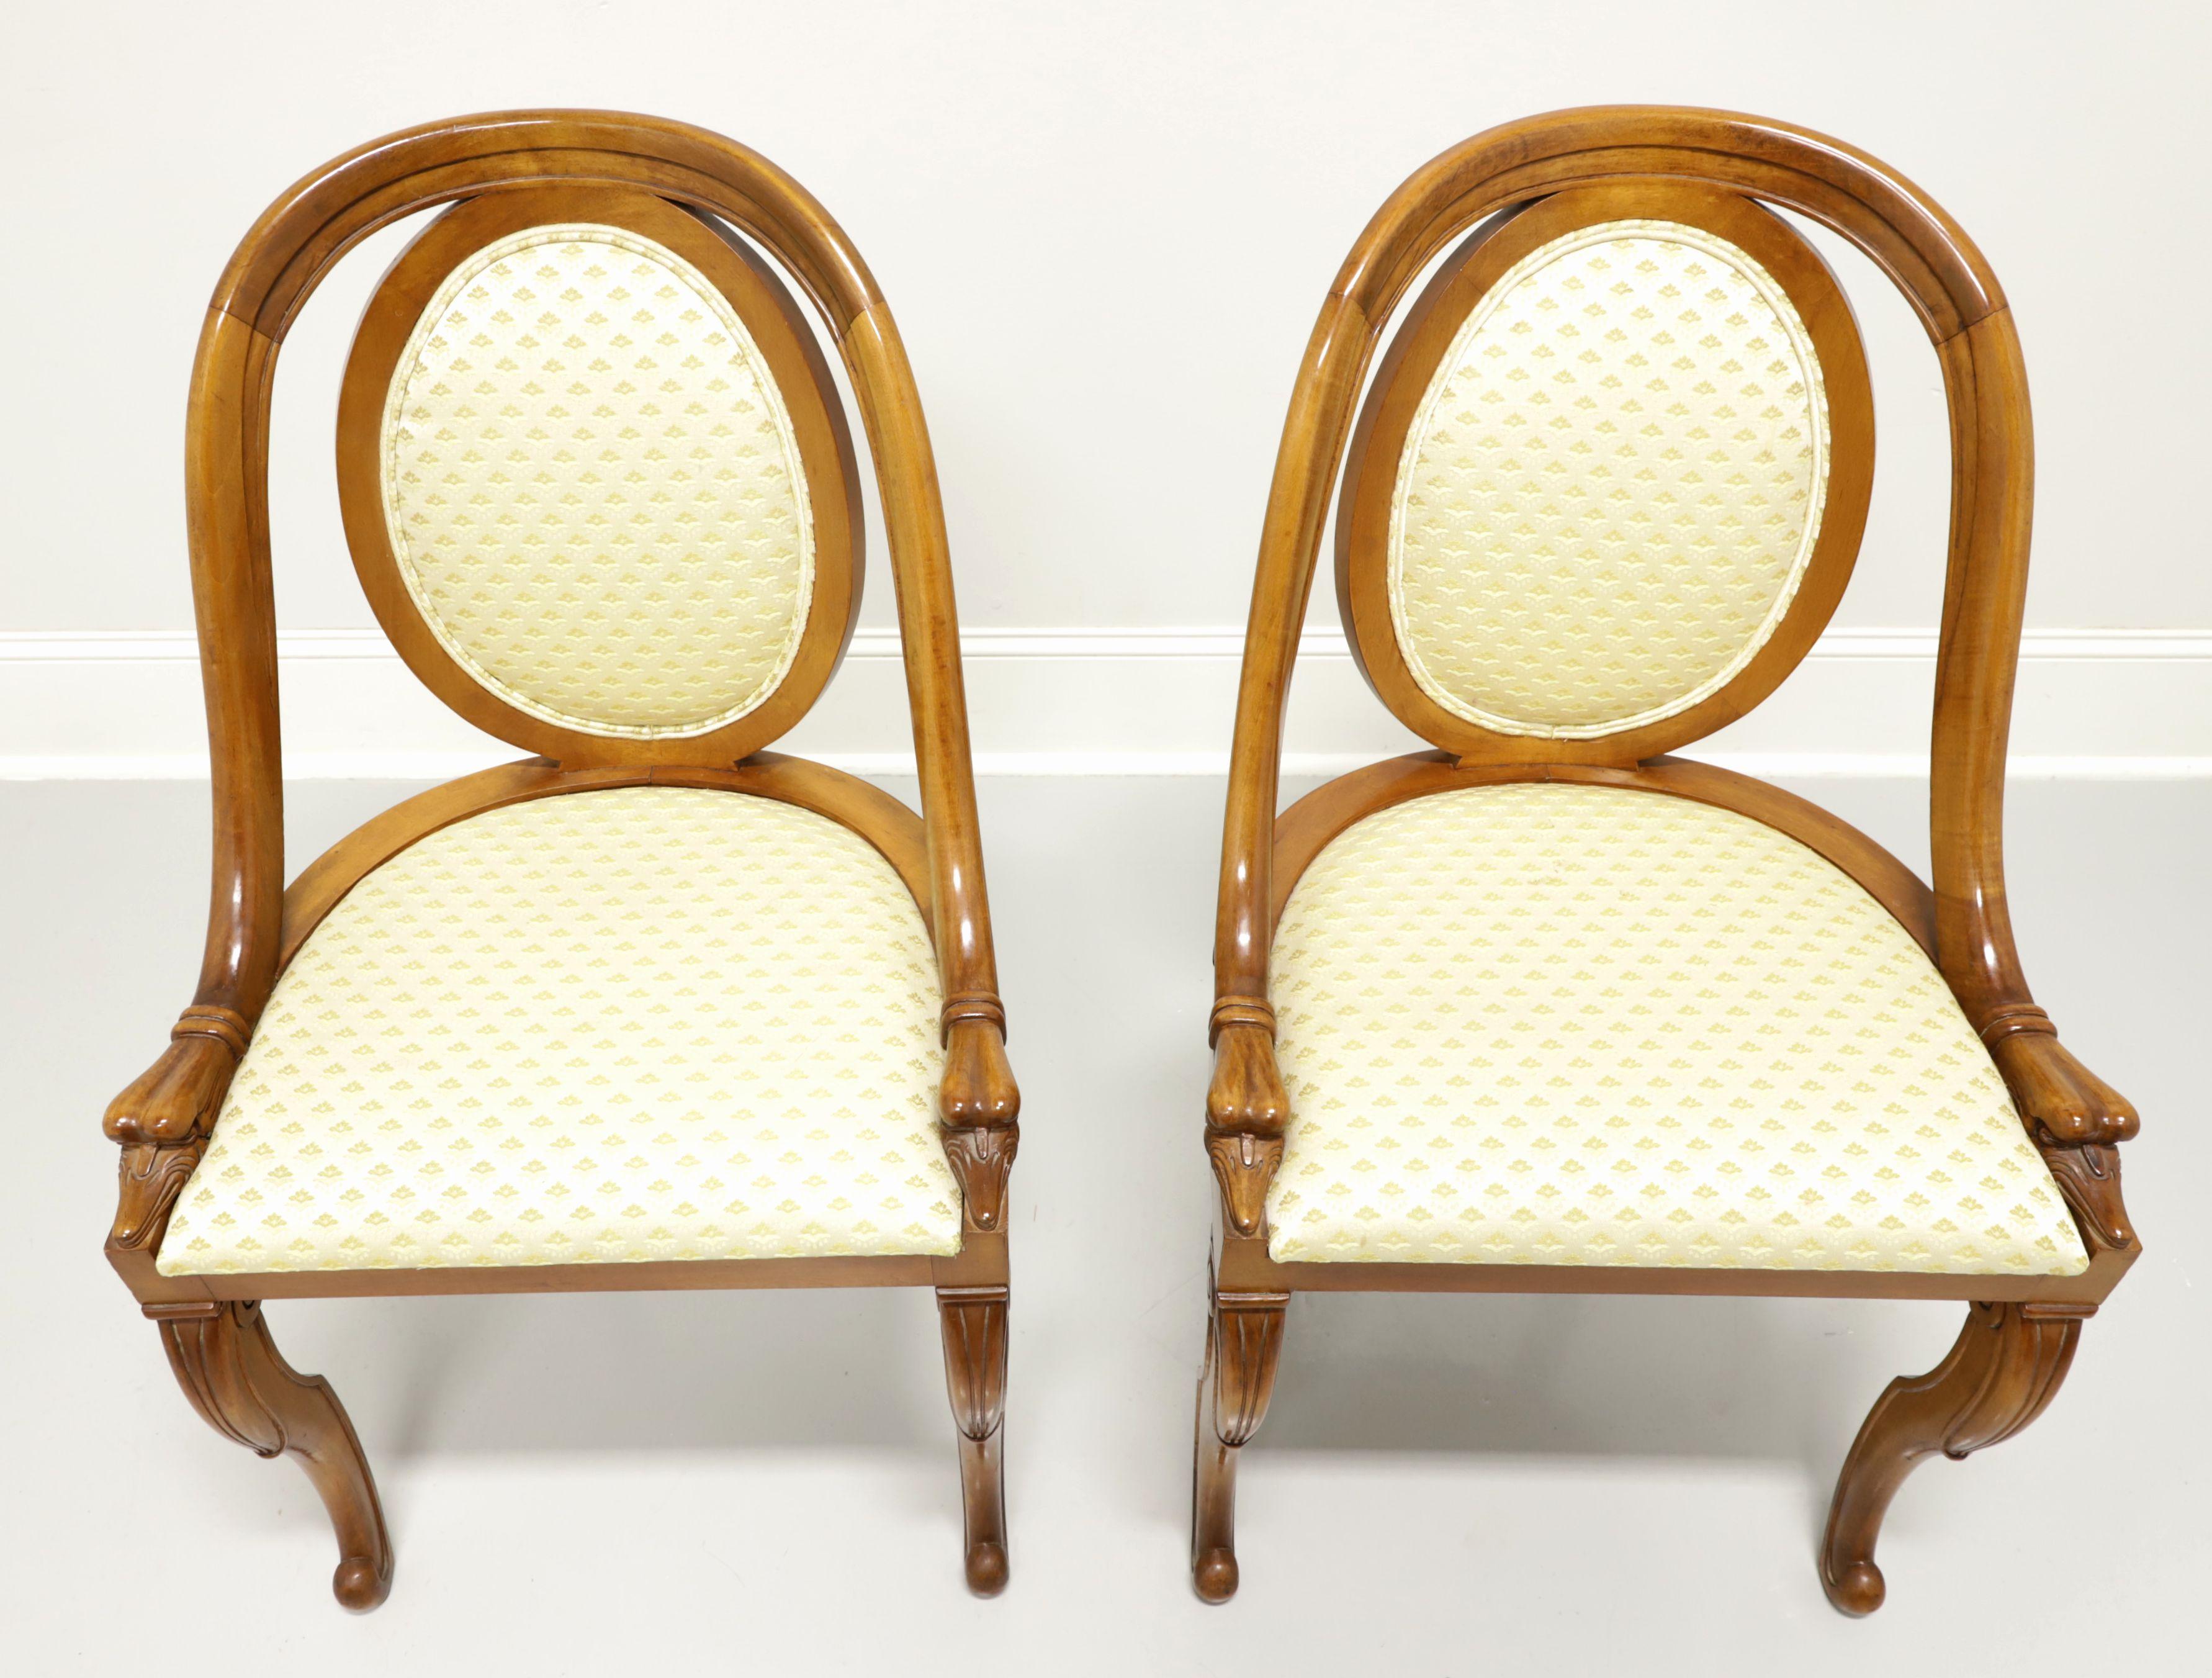 Une paire d'anciennes chaises de salle à manger françaises de style Art Déco, sans marque. Bois dur massif avec une finition de ton miel doré, une crête arrondie se fondant dans un montant incurvé se terminant par des têtes d'oie sur le tablier, un